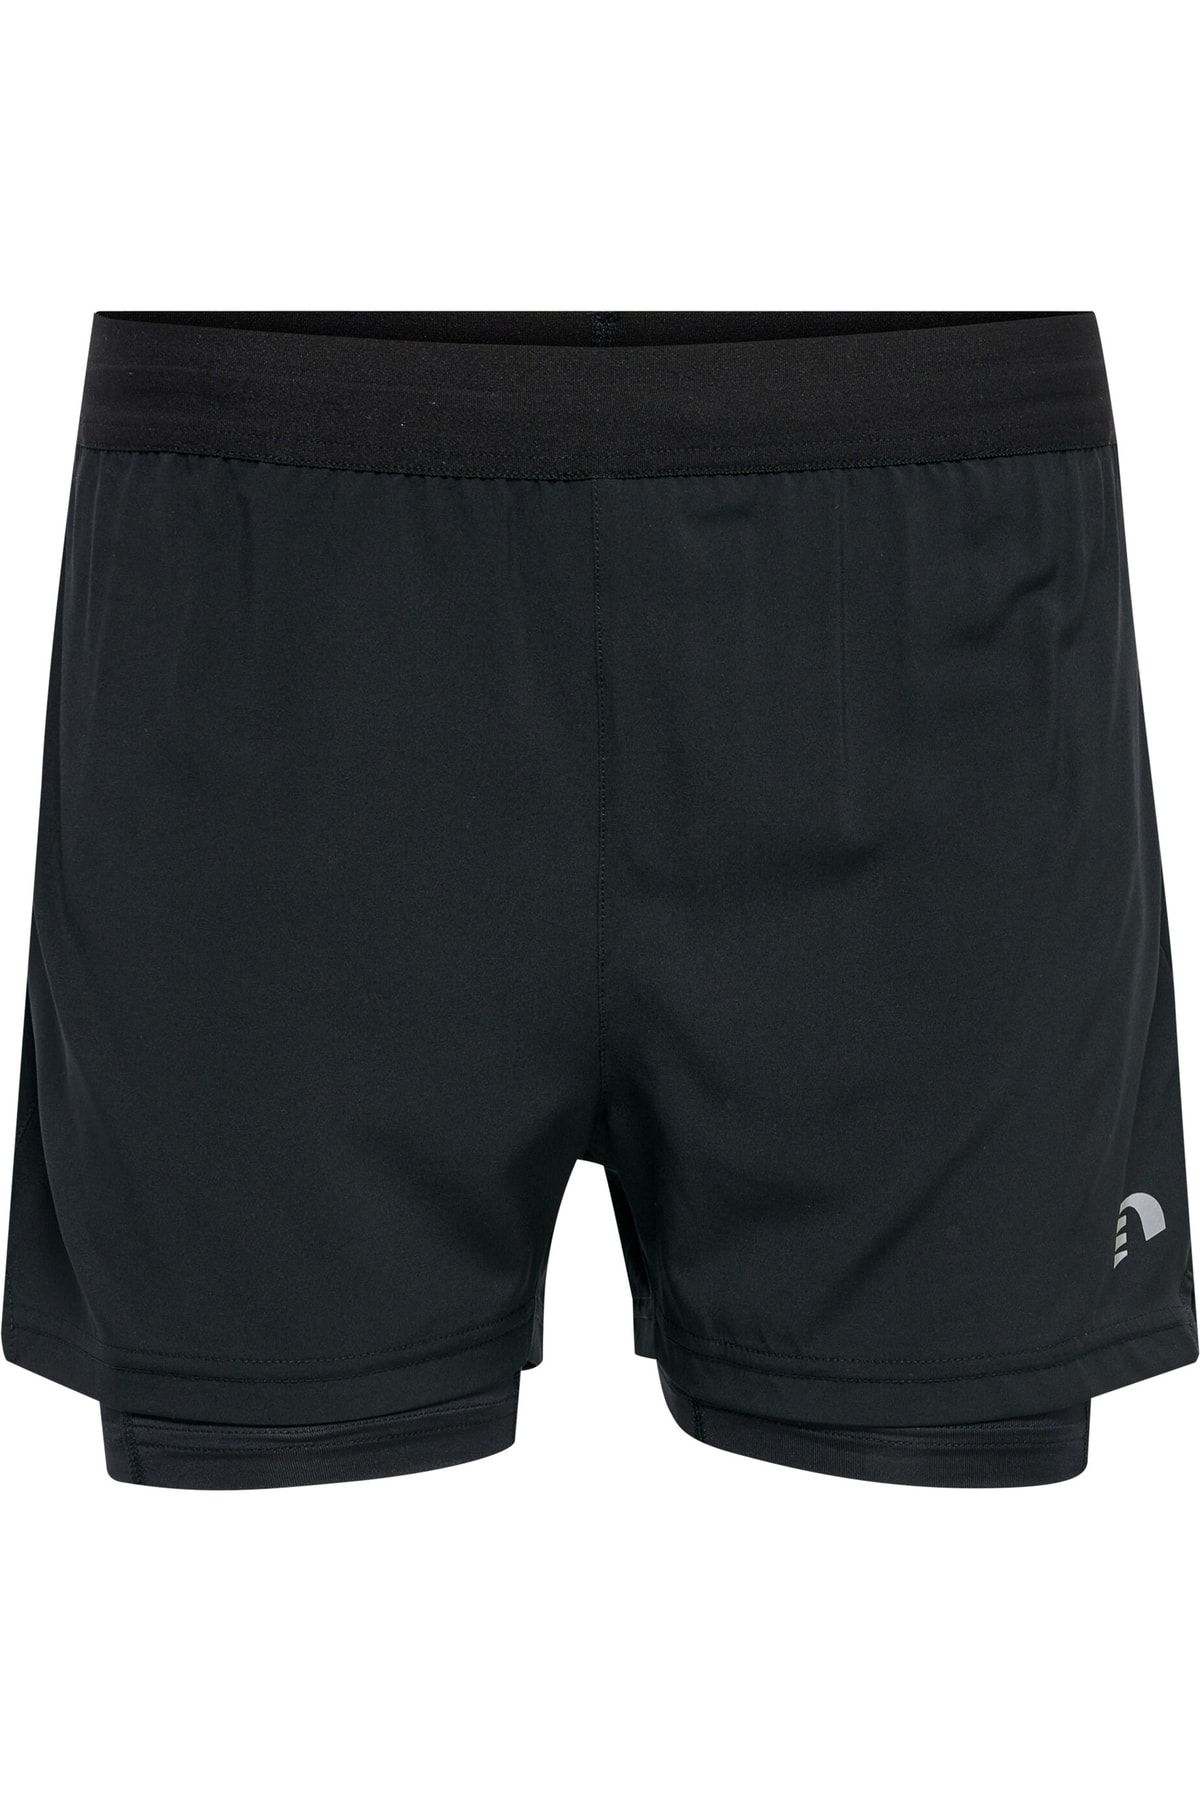 NEWLINE Damen 2-Lagen Sport Shorts - schwarz